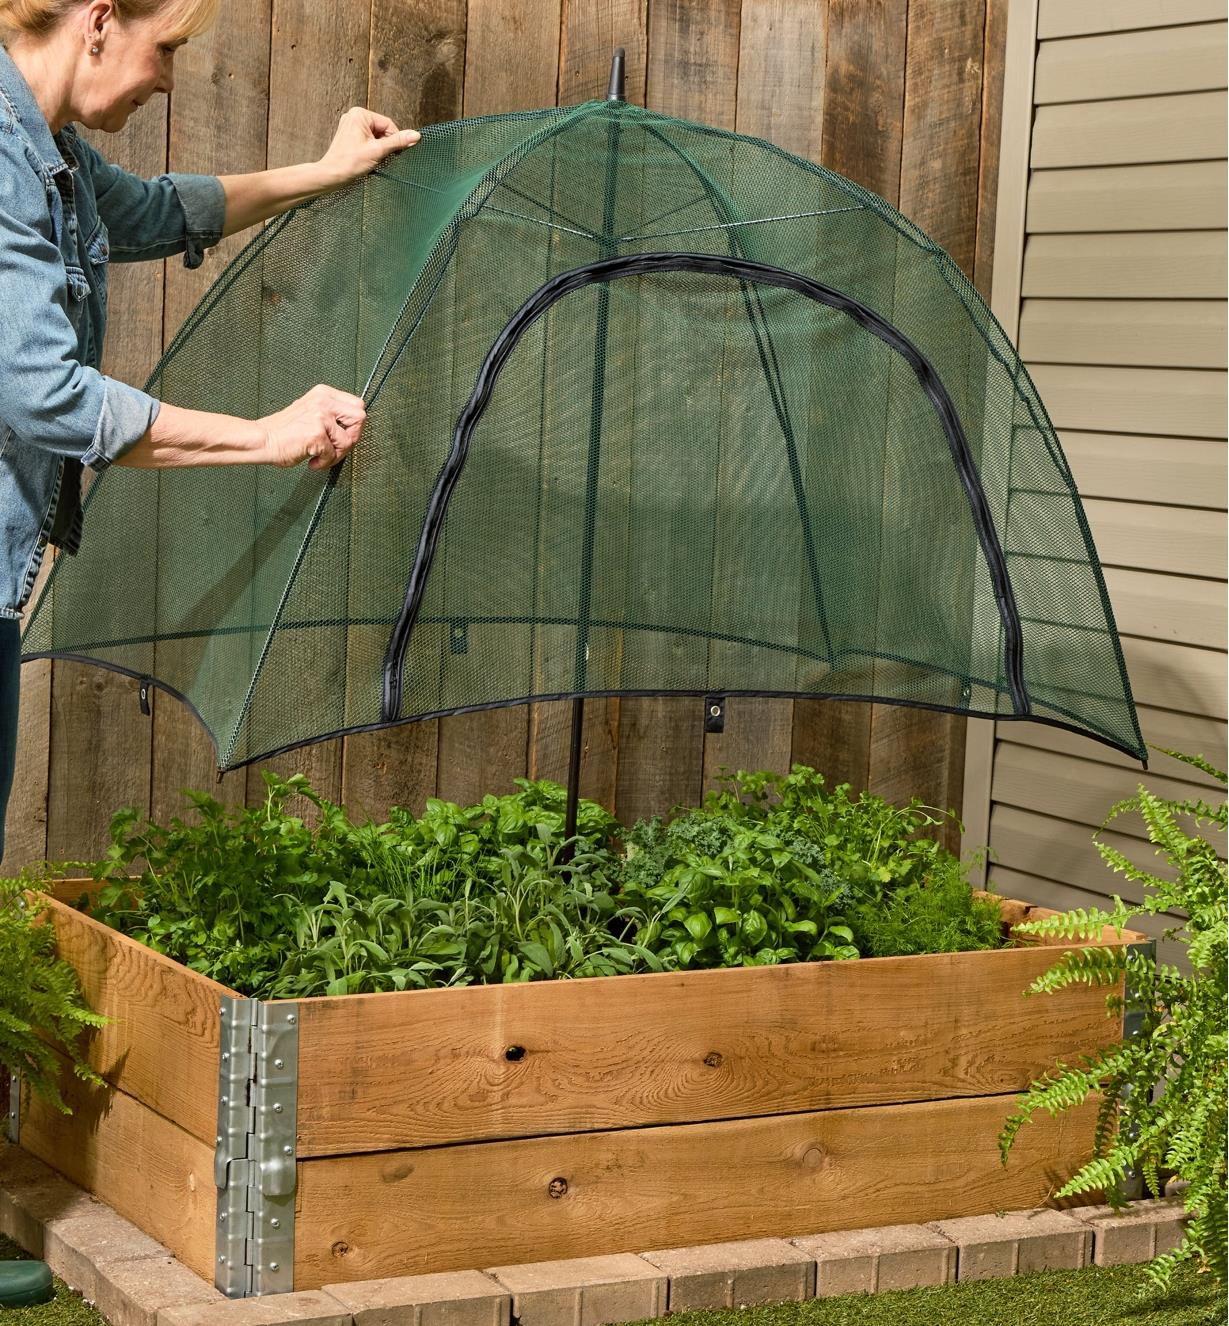 Personne déposant un dôme de jardin sur une plate-bande surélevée pour protéger des fines herbes et des légumes-feuilles